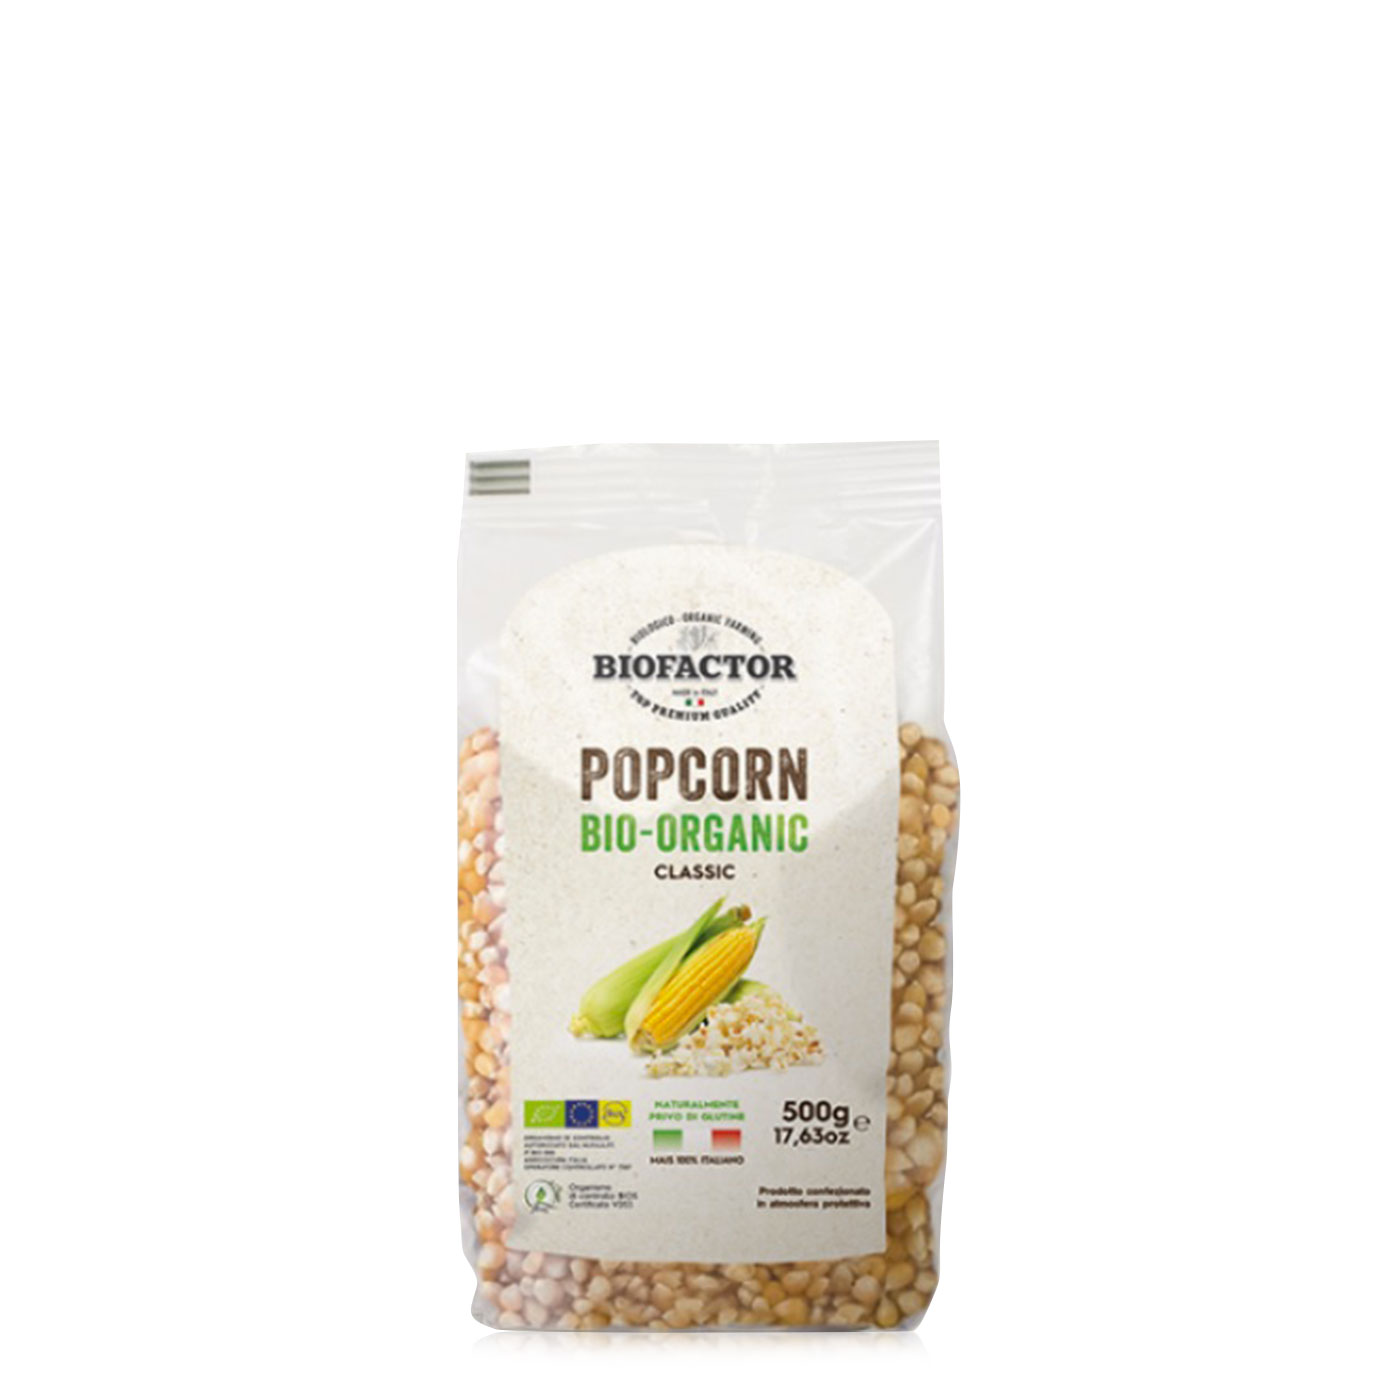 Popcorn – Biofactor